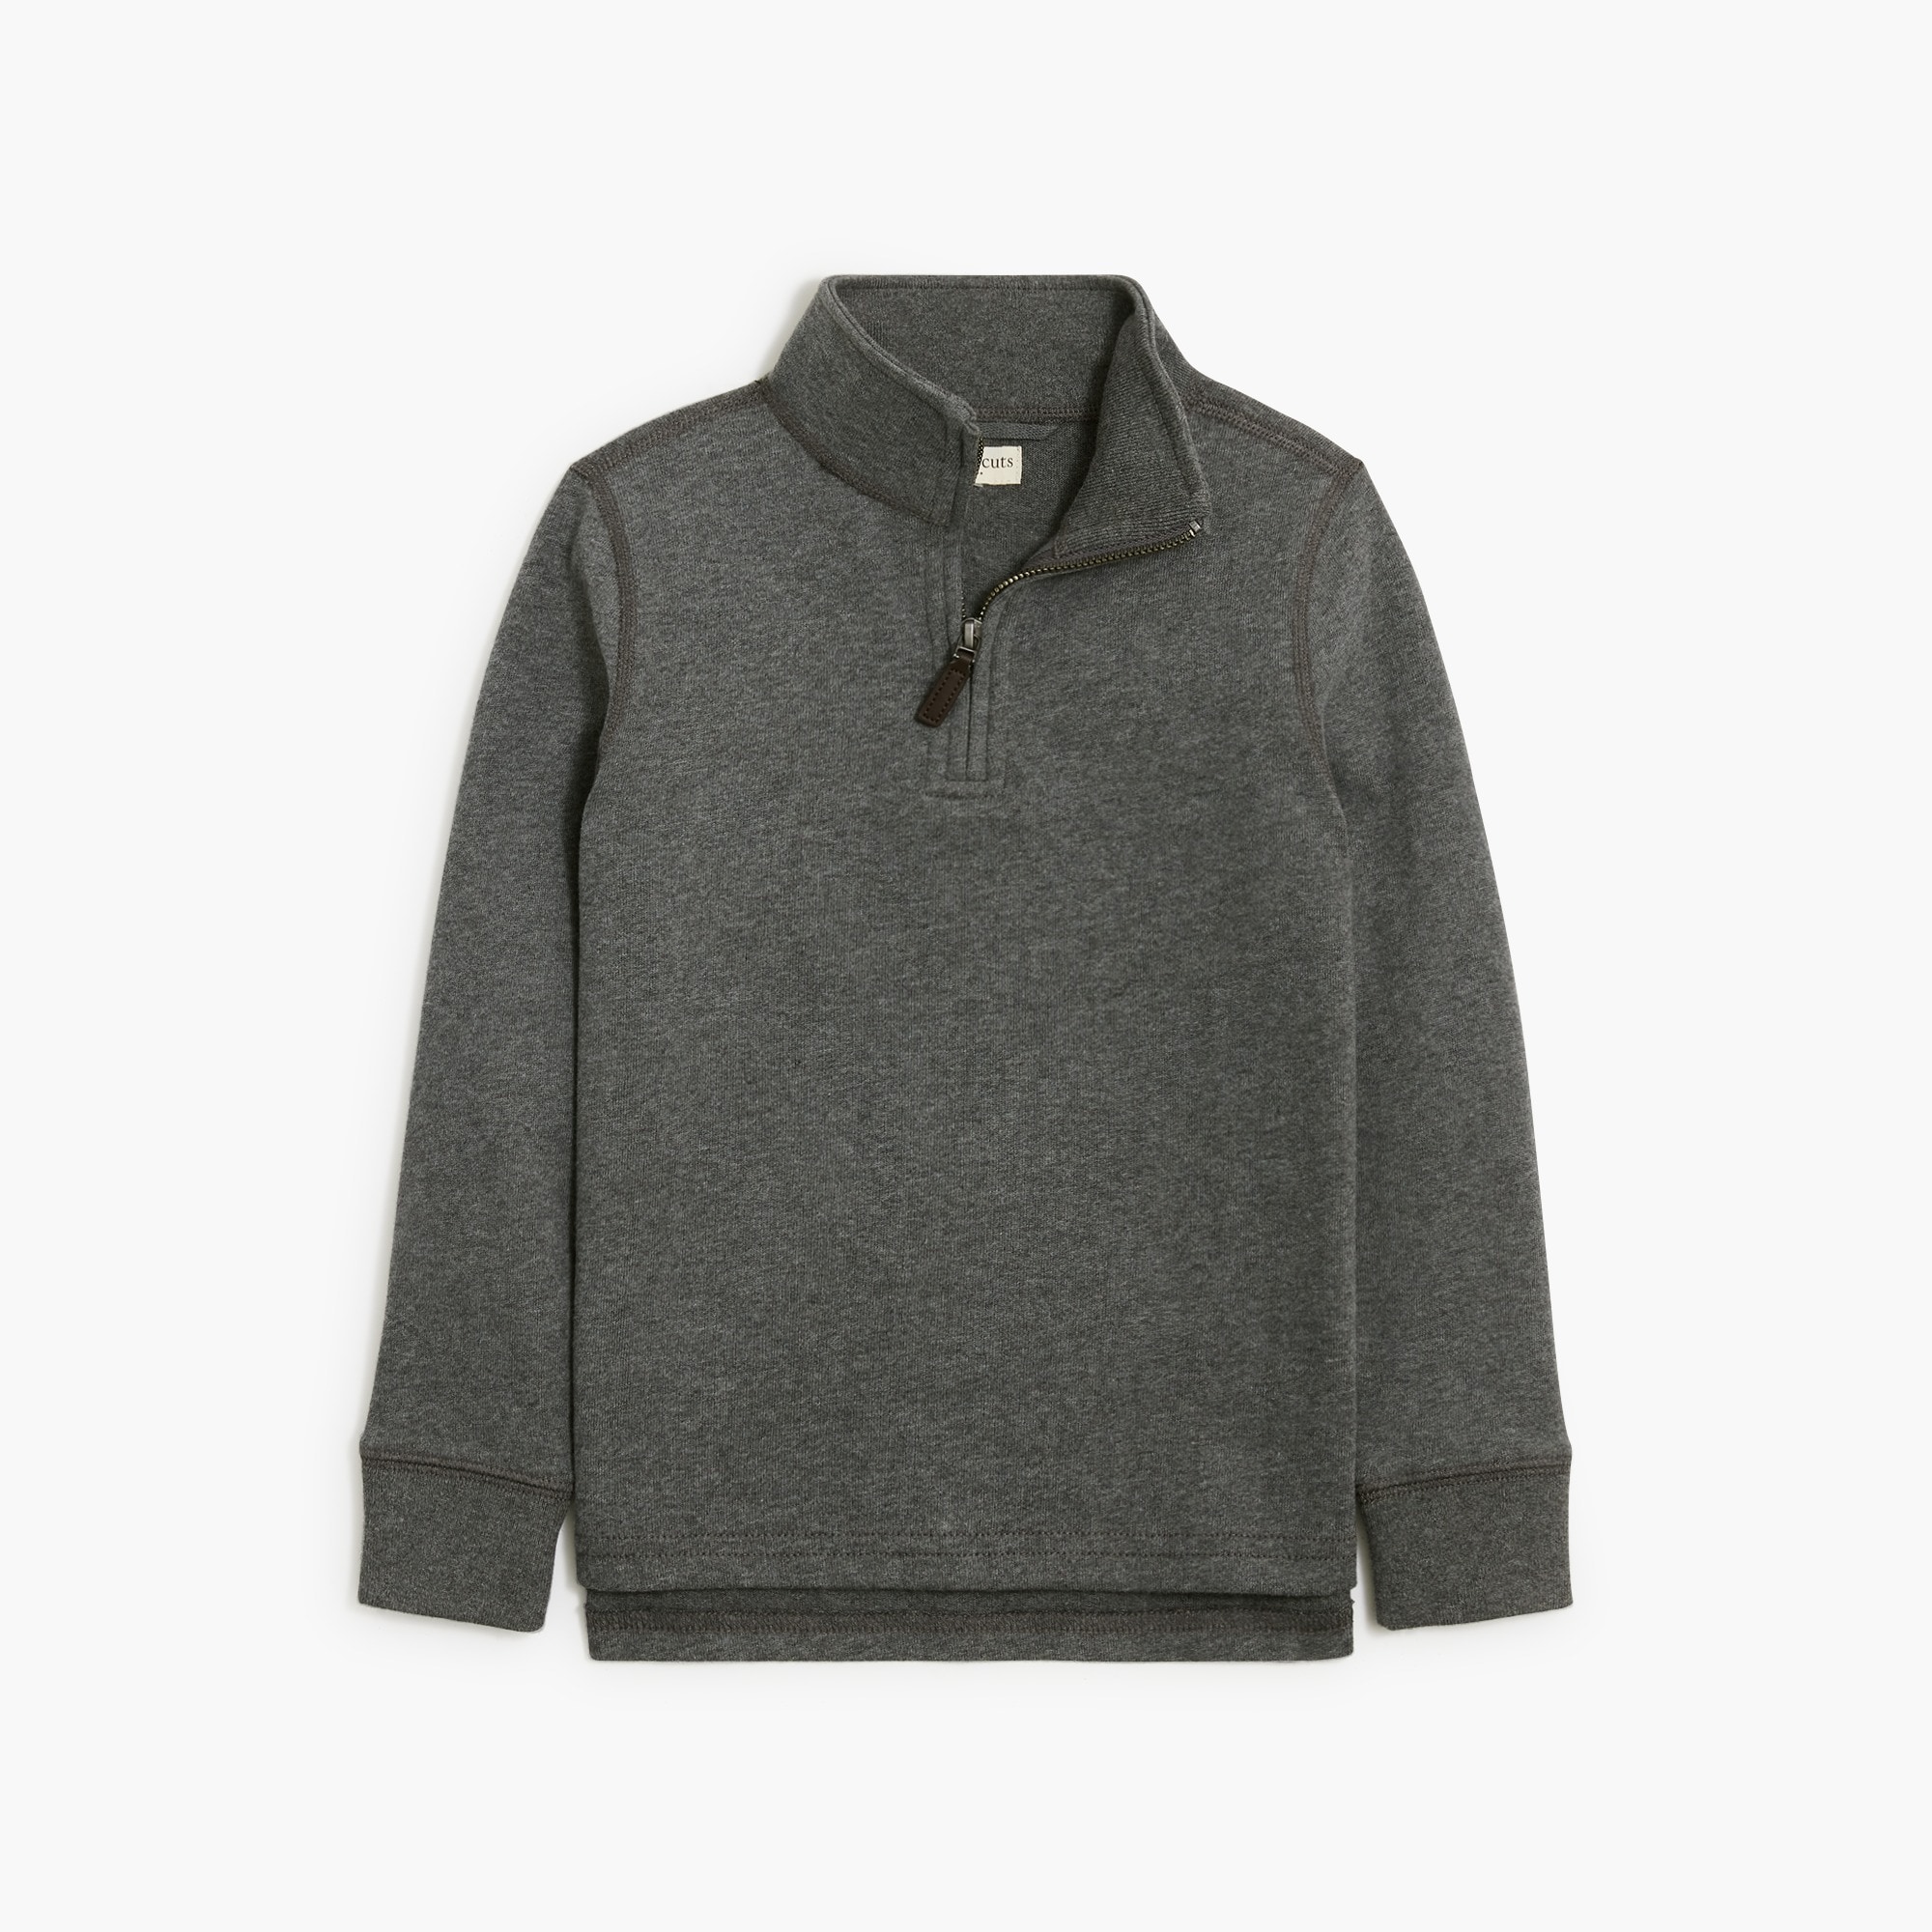 Boys' sueded half-zip popover sweatshirt